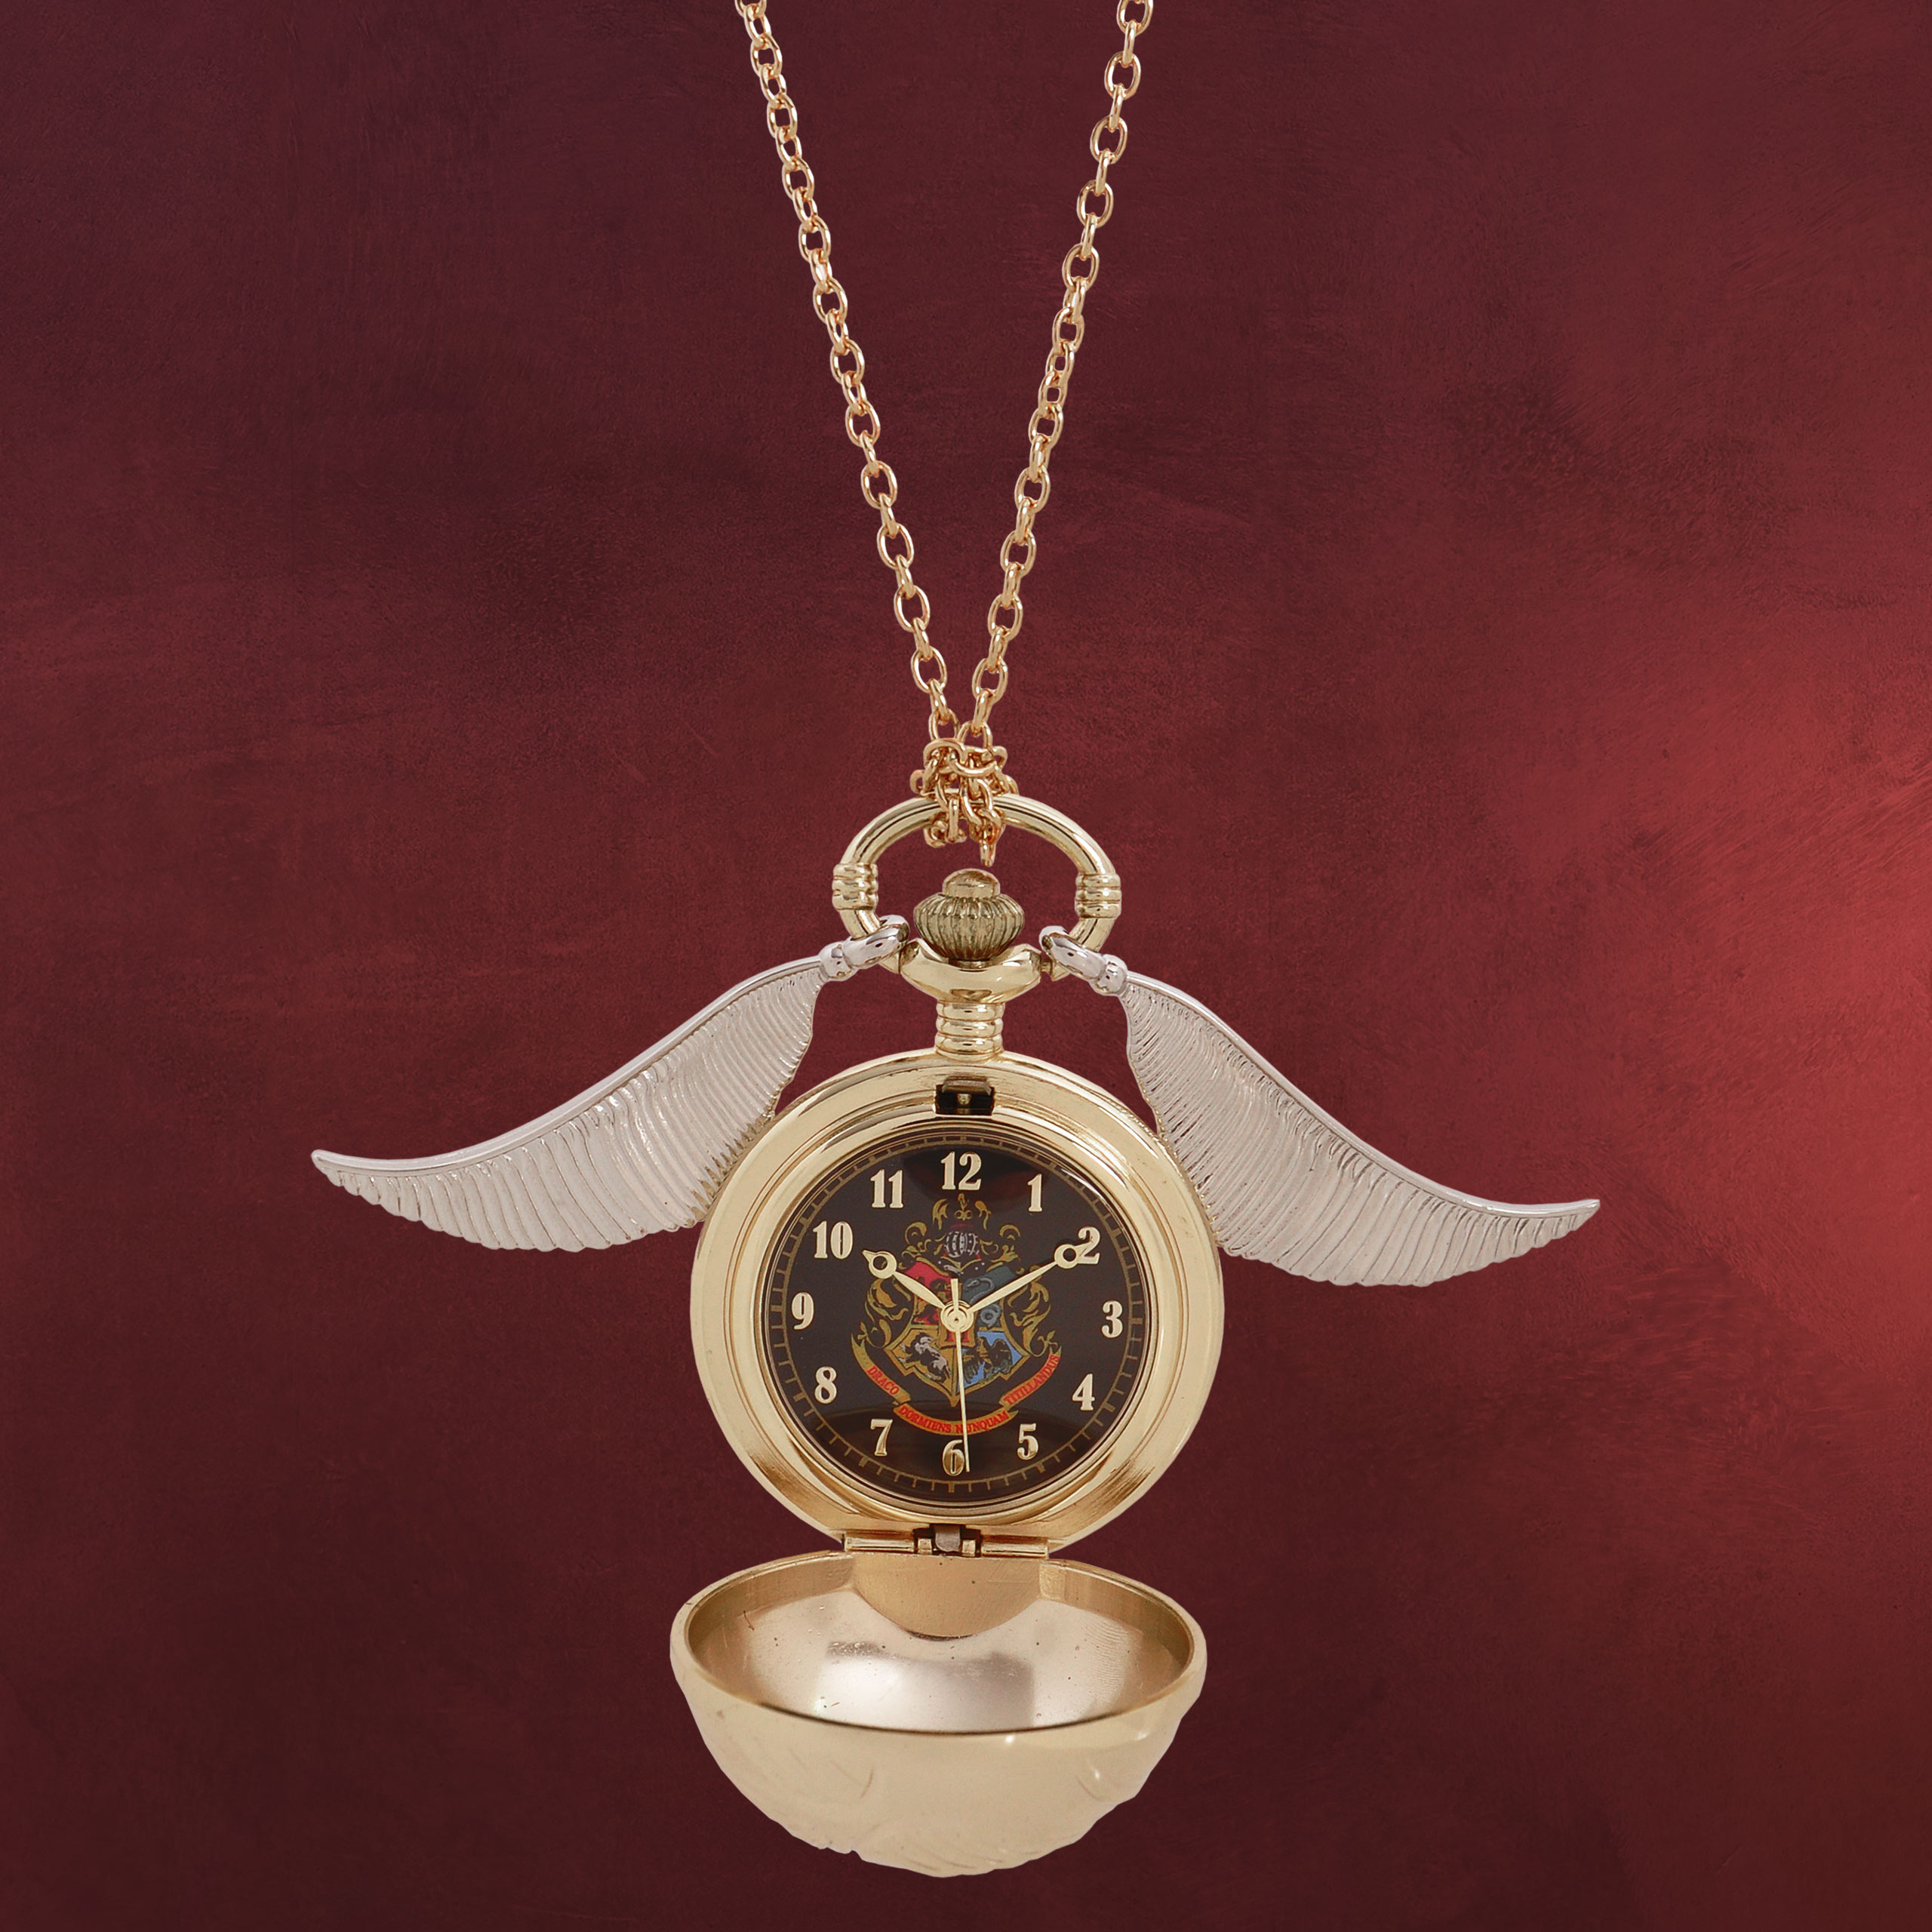 Harry Potter Version rot Kette mit Gleis 9 3/4 Medaillon und Uhr